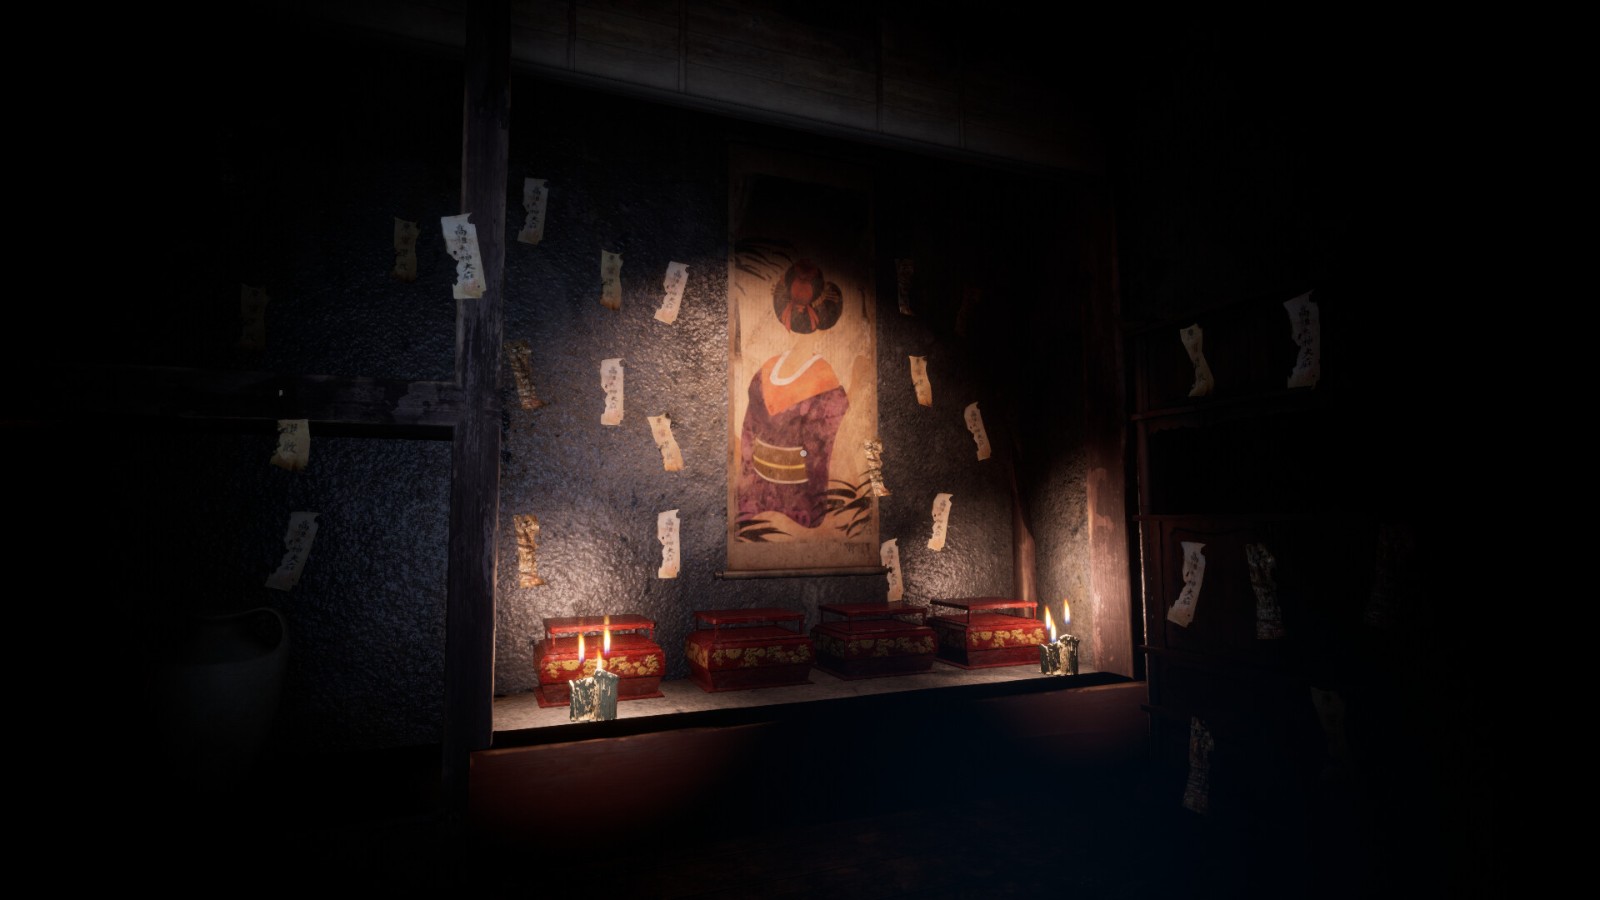 第一人称密室恐怖游戏《千代》将于10月底发售 登陆PC和PS